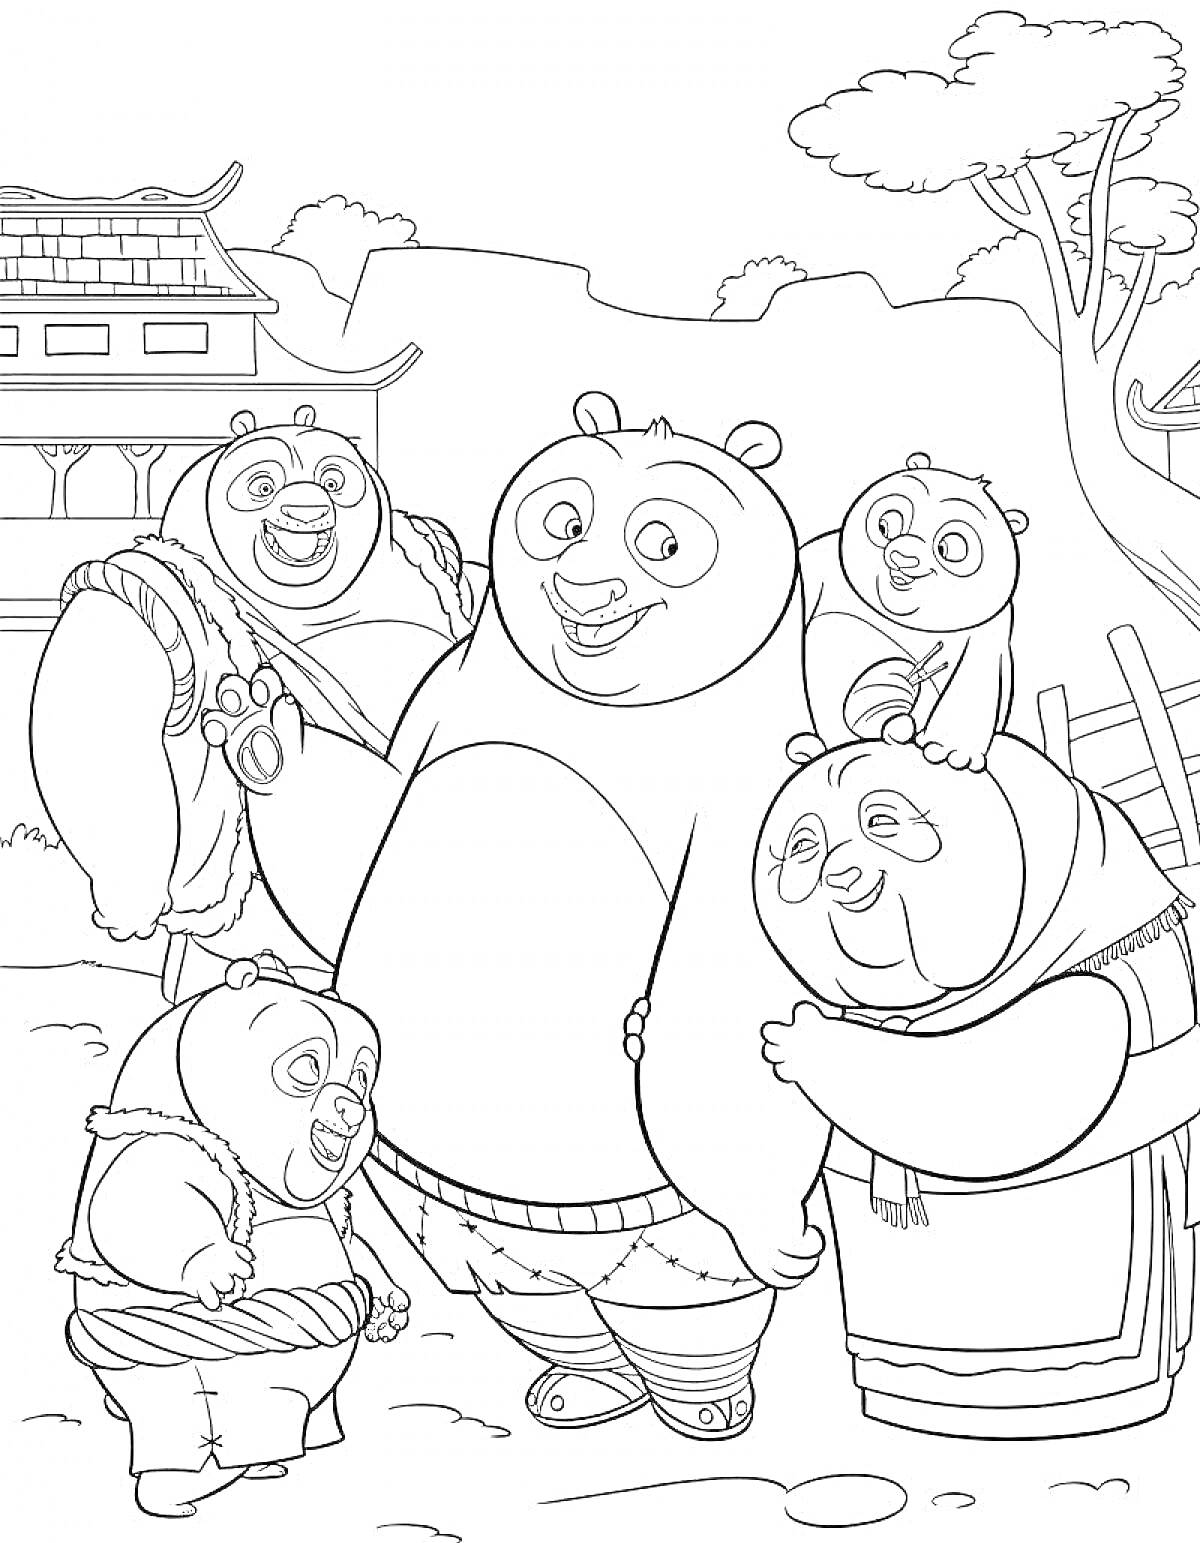 Раскраска Кунг-фу панда 3 - сцена с пандами на улице деревни, дом, деревья на заднем плане